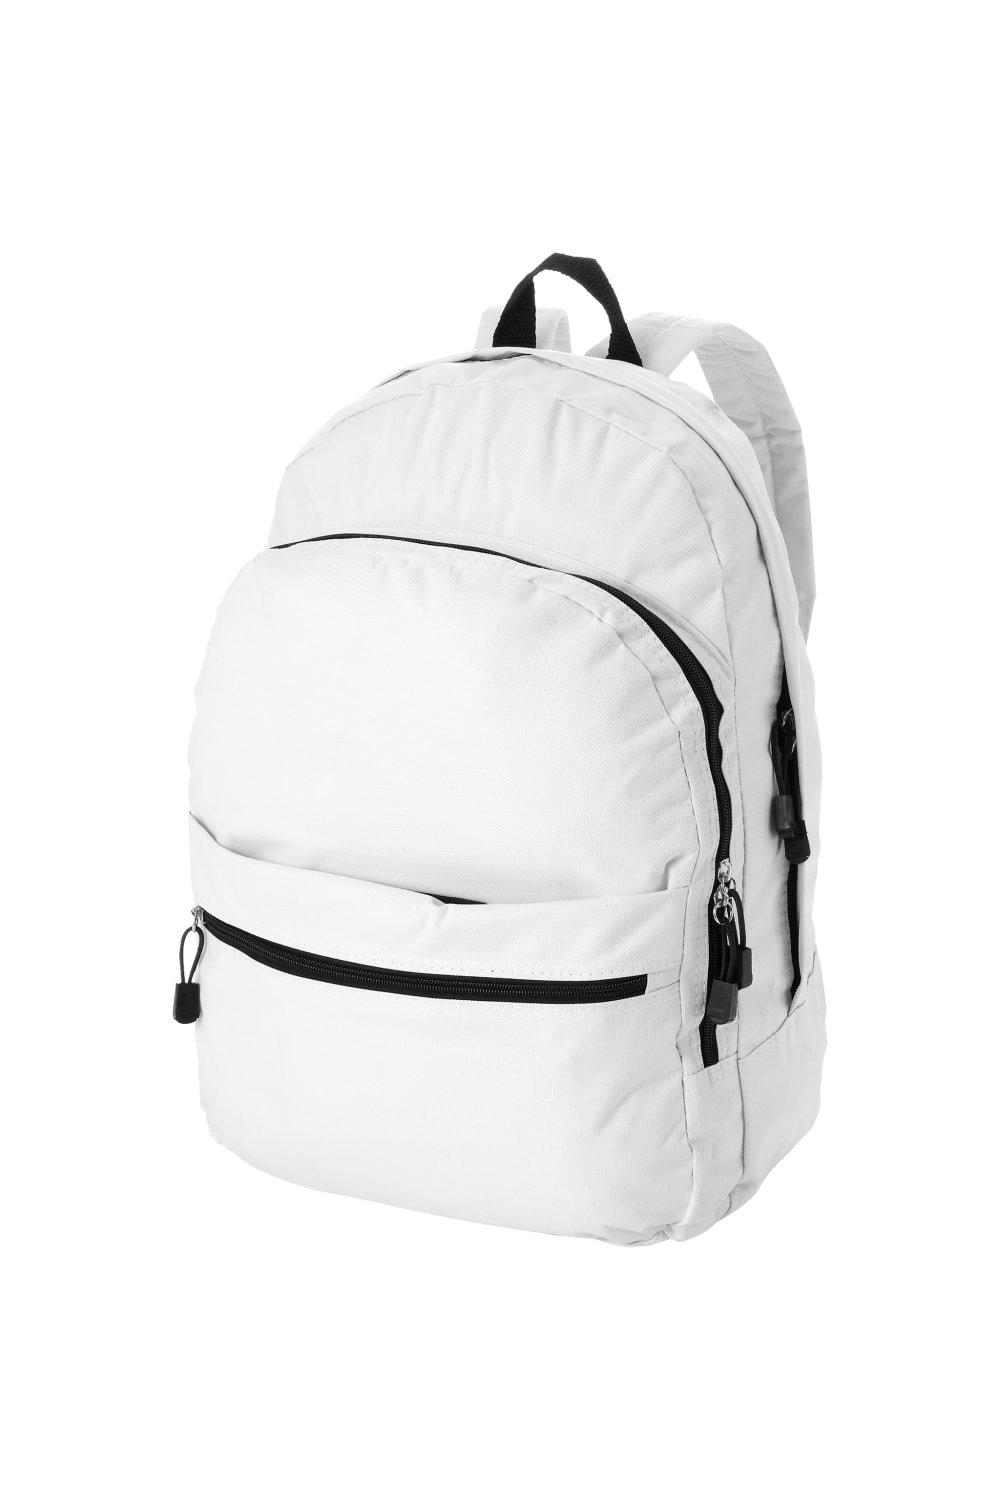 Трендовый рюкзак Bullet, белый рюкзак с карманом единорог 1 шт